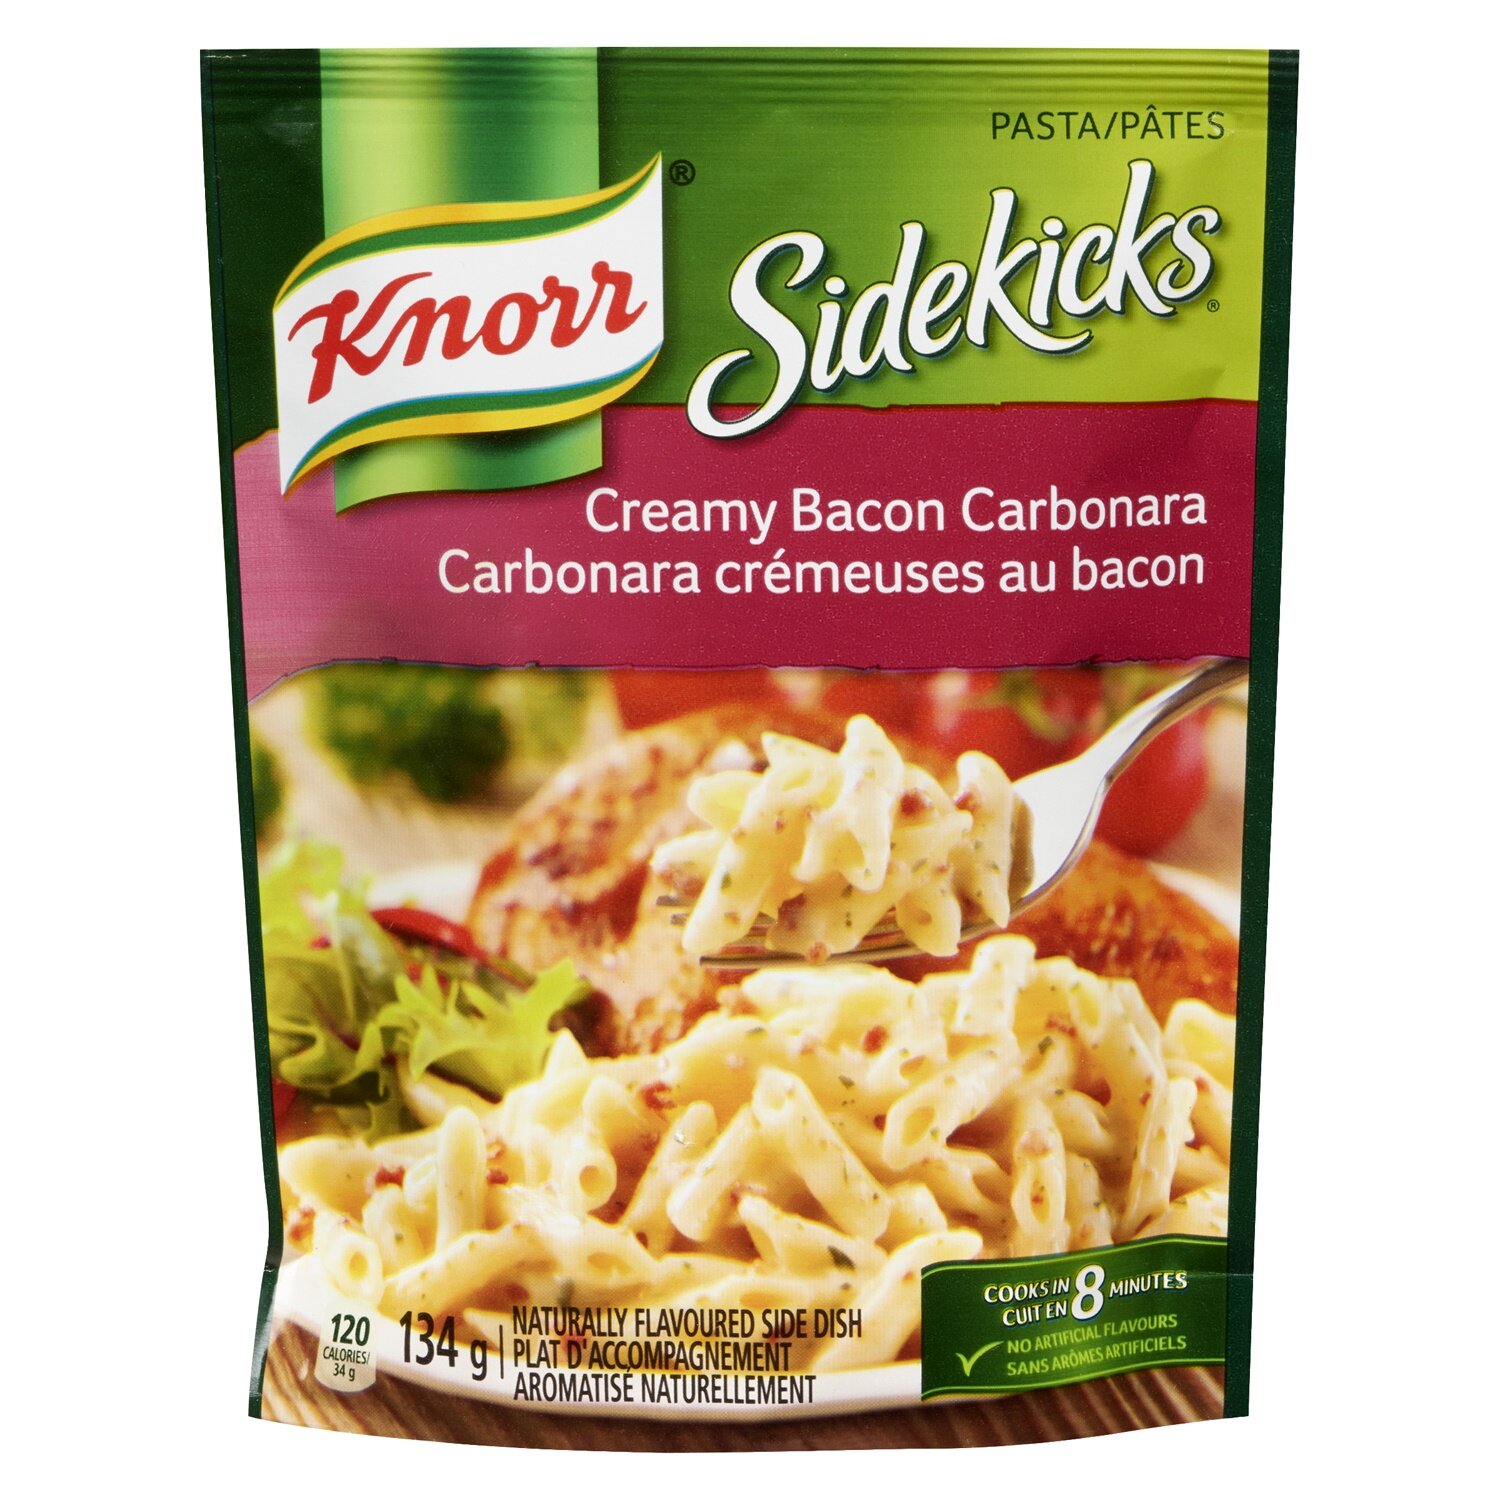 Knorr Sidekicks - Creamy Bacon Carbonara Pasta